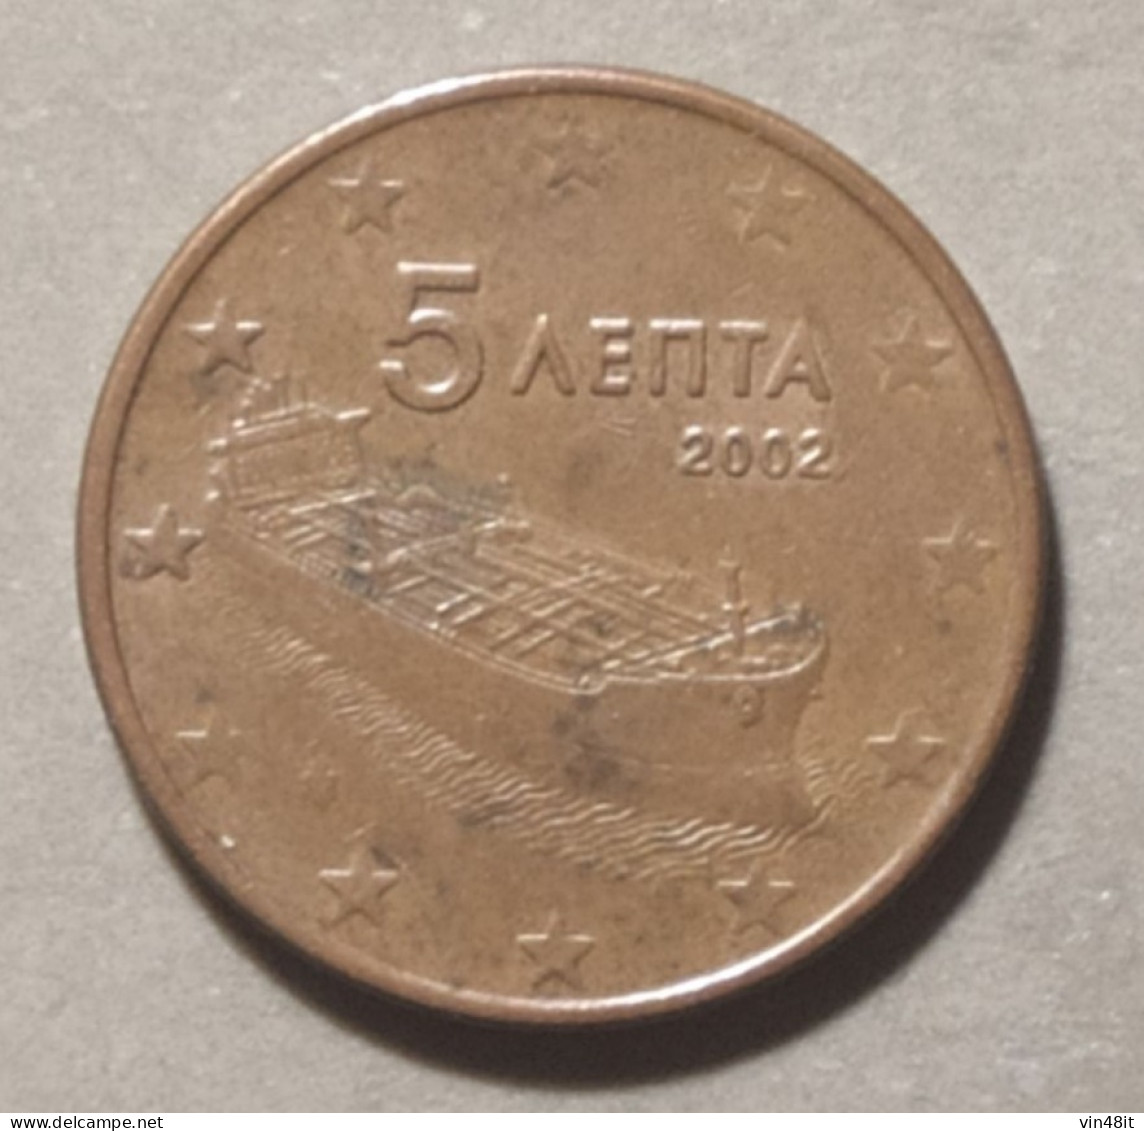 2002  -  GRECIA - MONETA IN EURO - DEL VALORE  DI  5  CENTESIMI - USATA - Grèce